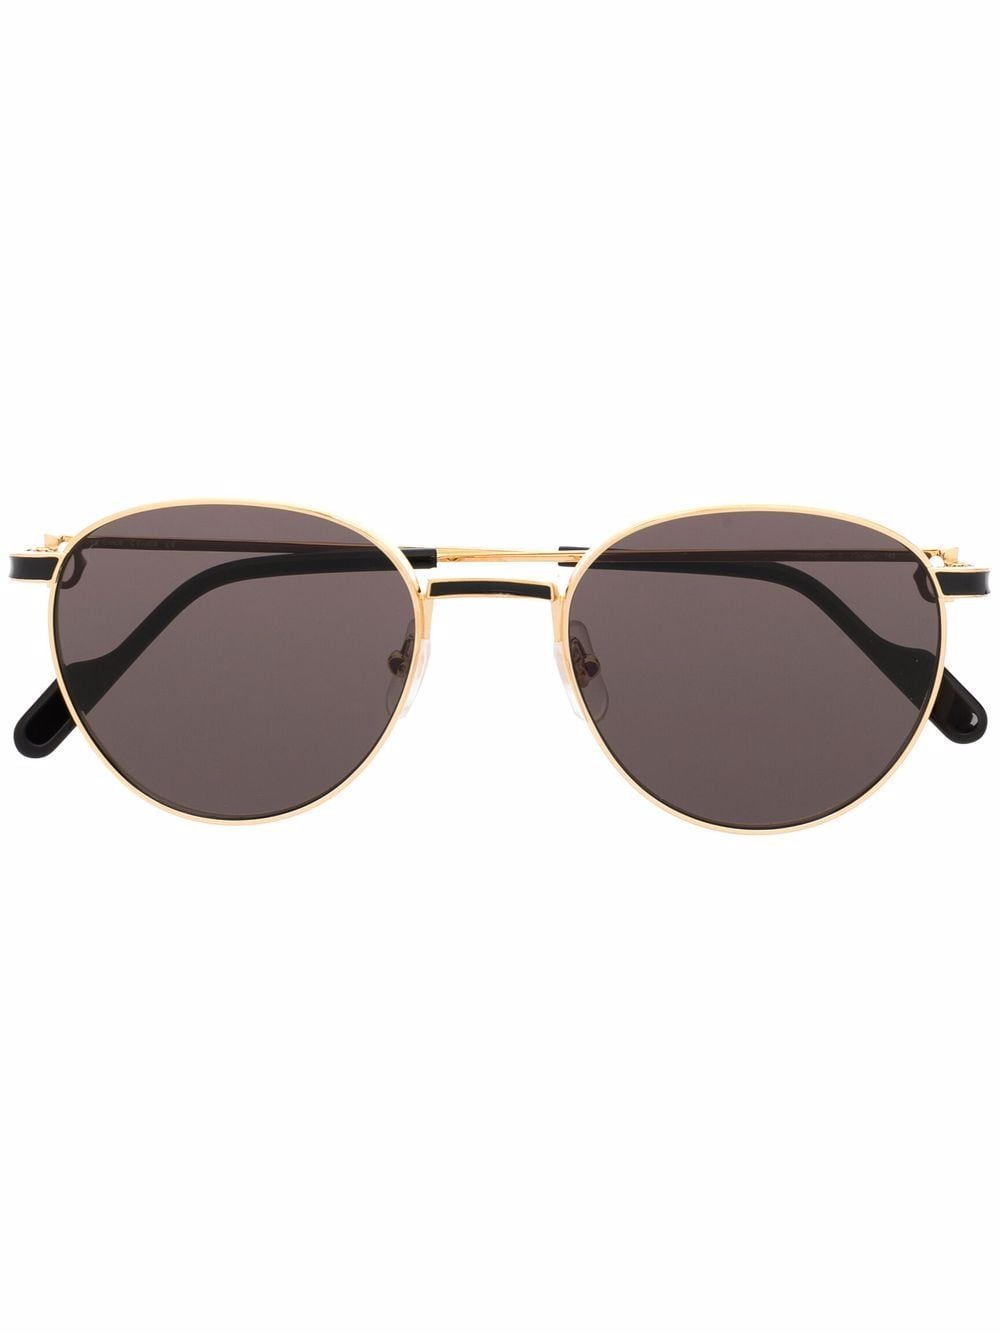 Cartier Eyewear Sonnenbrille mit Panto-Gestell - Gold von Cartier Eyewear